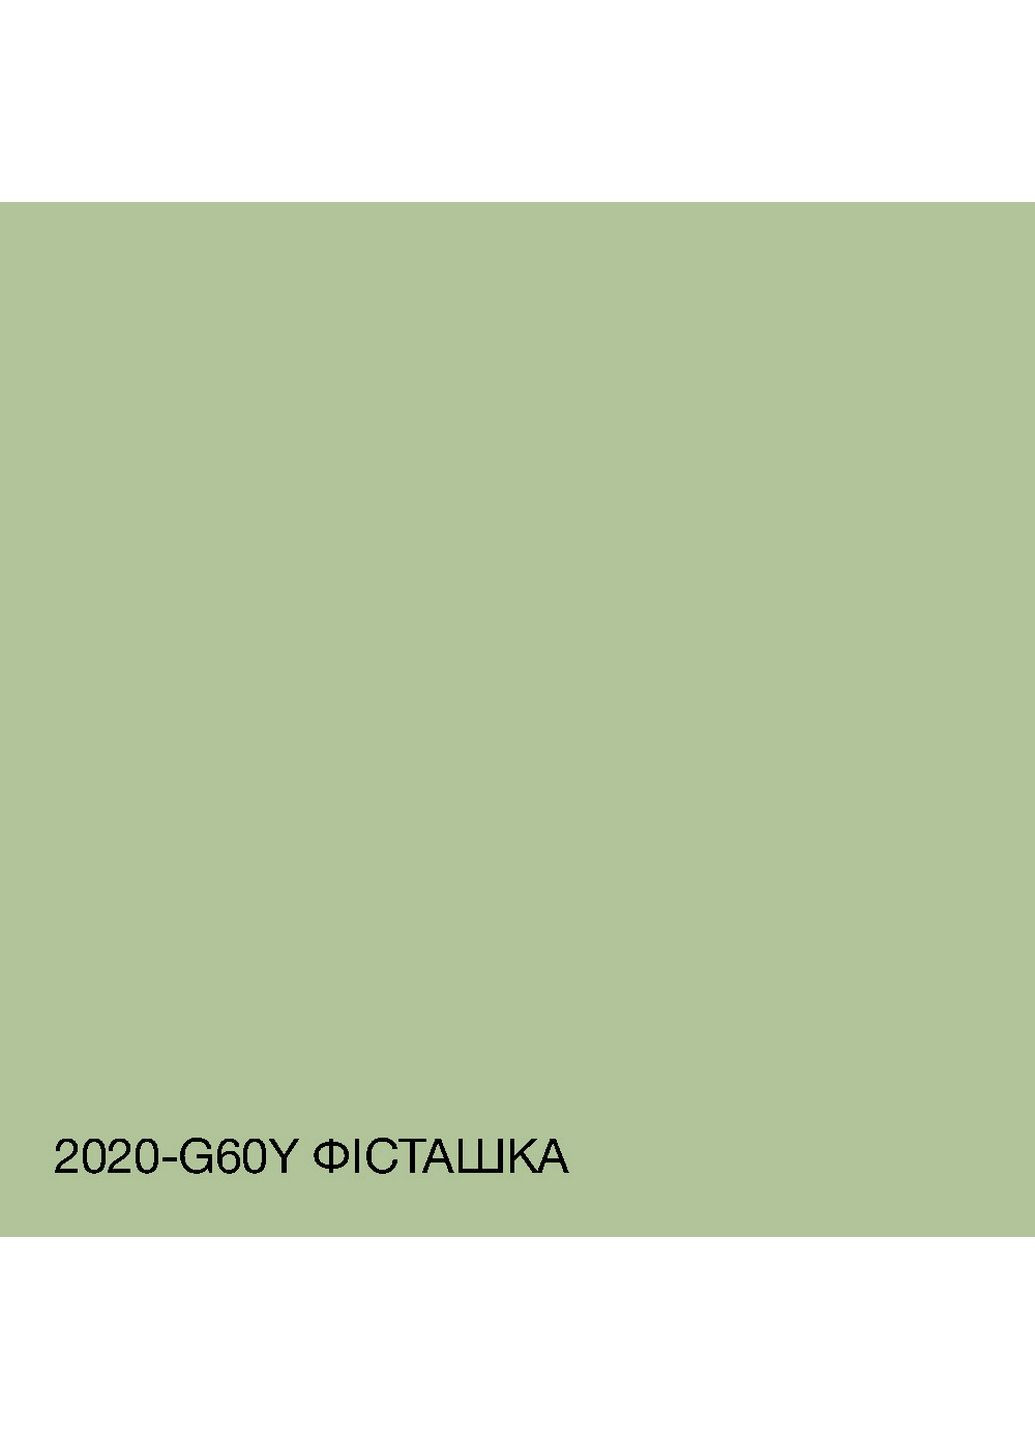 Фасадная краска акрил-латексная 2020-G60Y 10 л SkyLine (283326411)